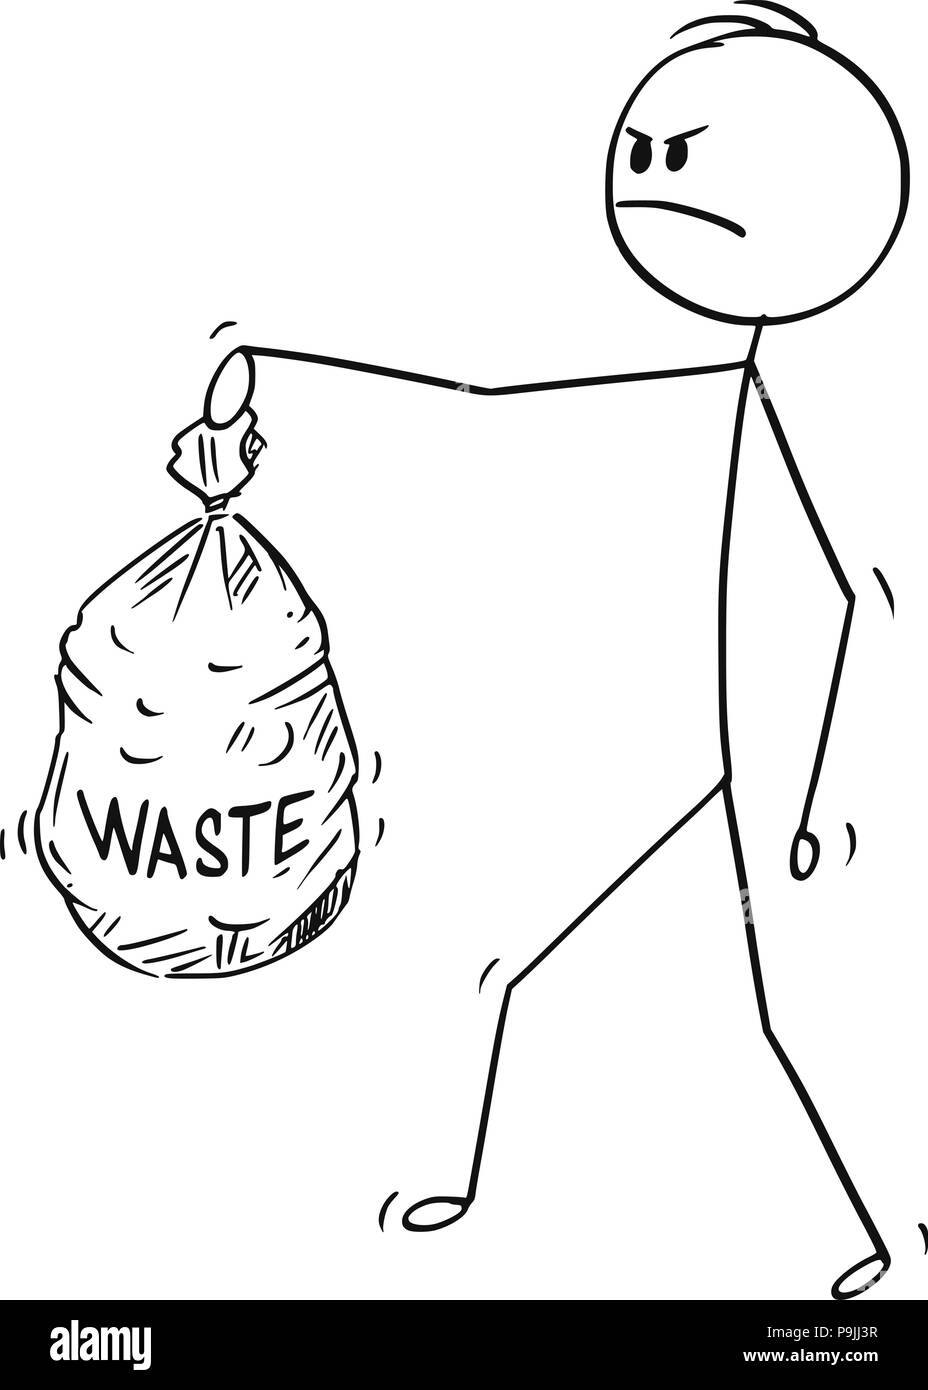 Caricatura de hombre enojado llevando bolsas de basura de plástico Ilustración del Vector